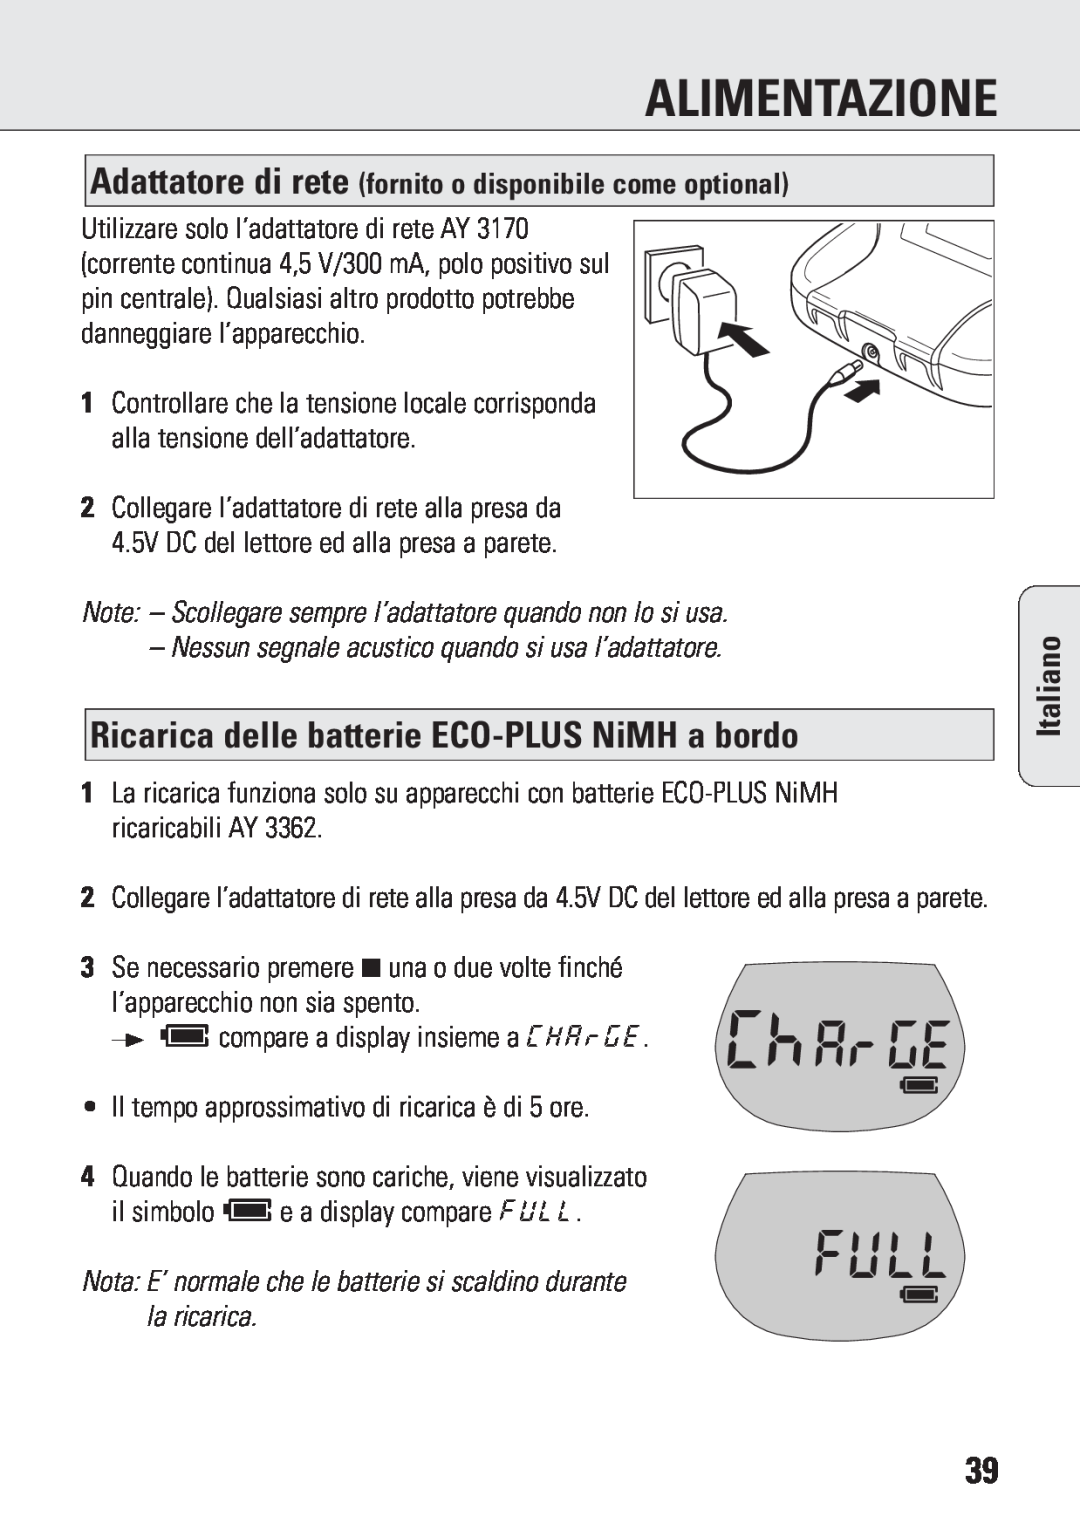 Philips ACT 7583 manual Ricarica delle batterie ECO-PLUSNiMH a bordo, Alimentazione, Italiano 